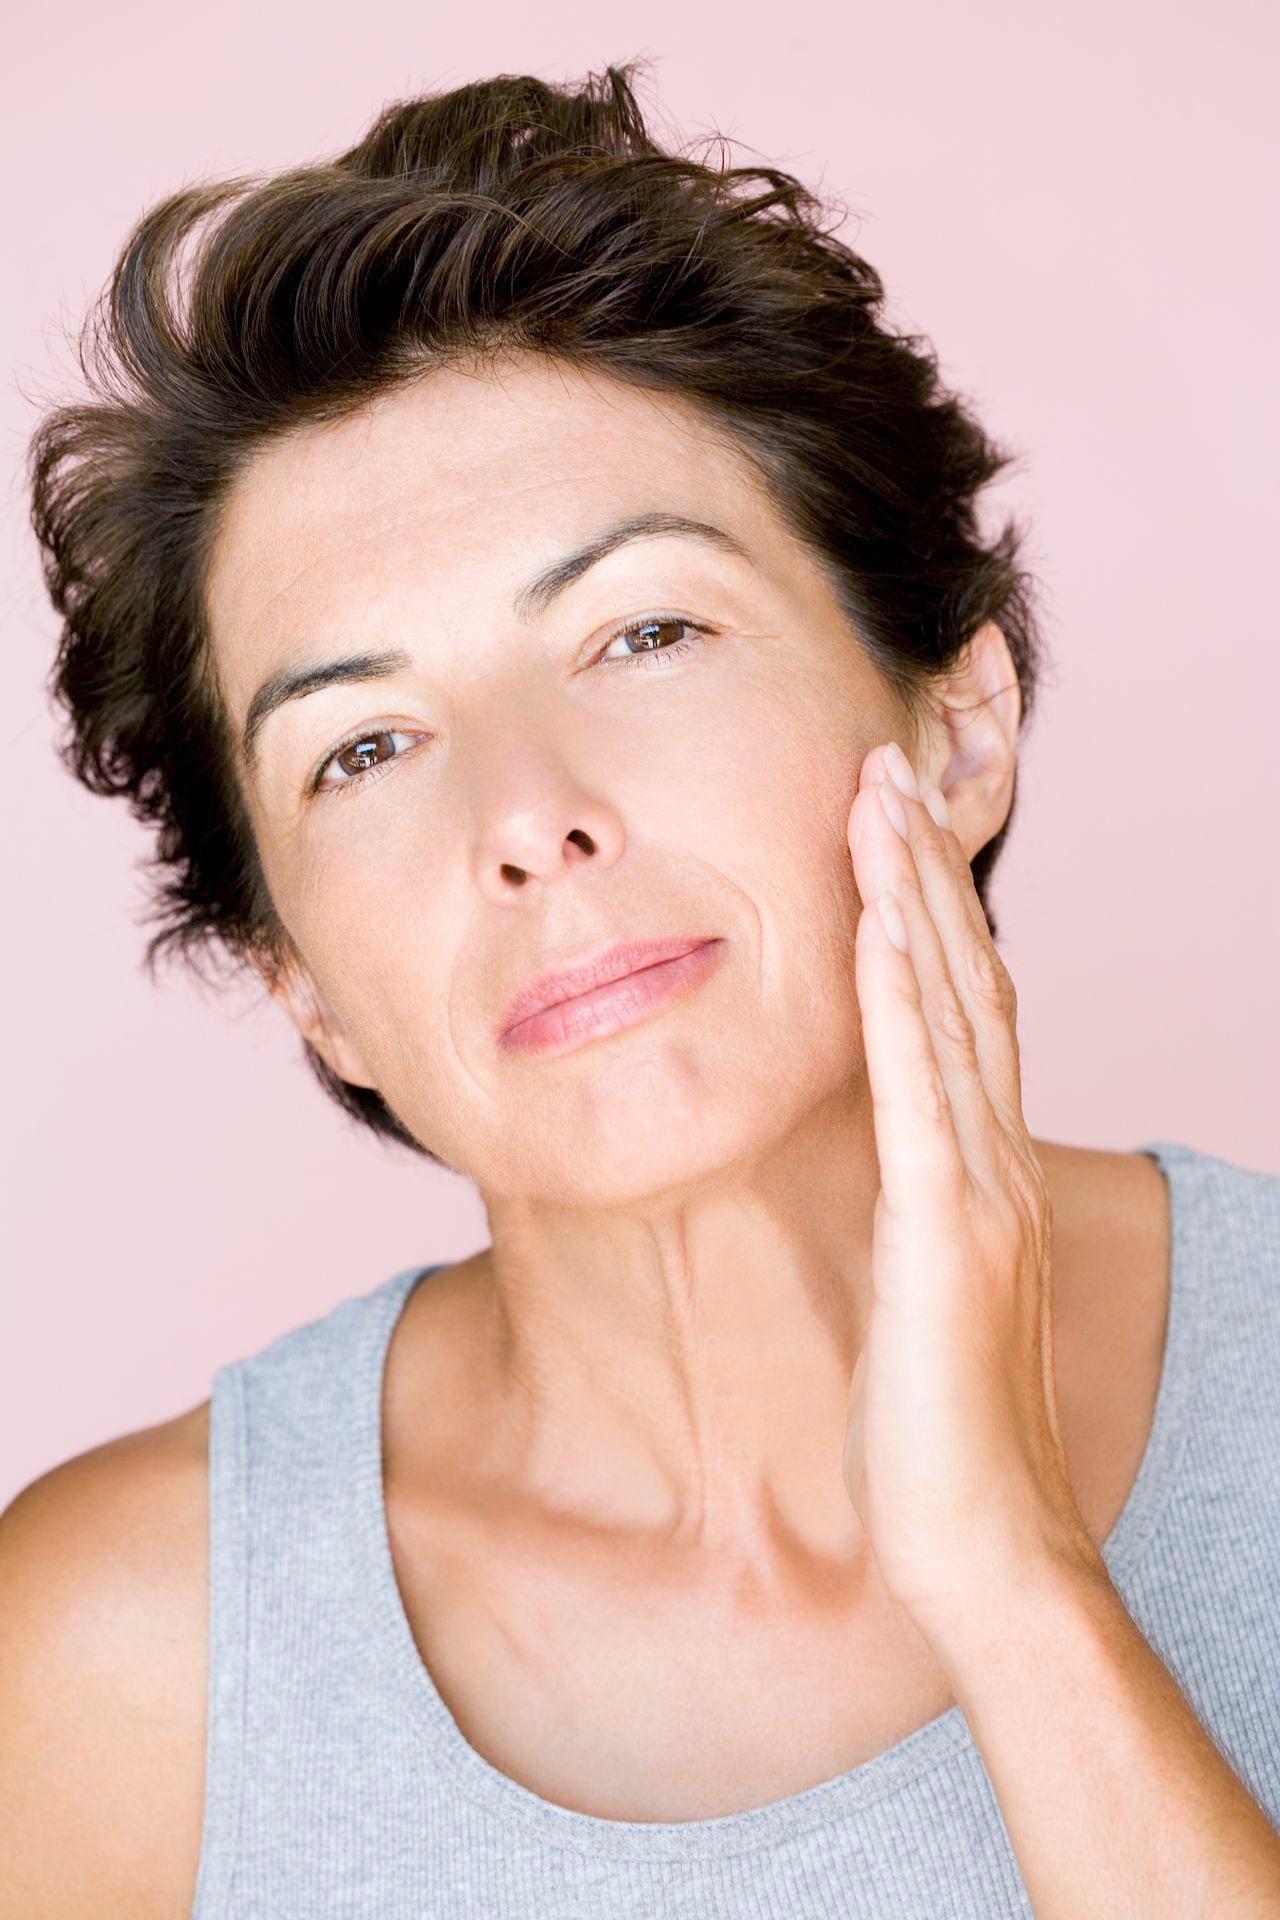 La Yoga facial ayuda a tonificar los músculos de la piel.